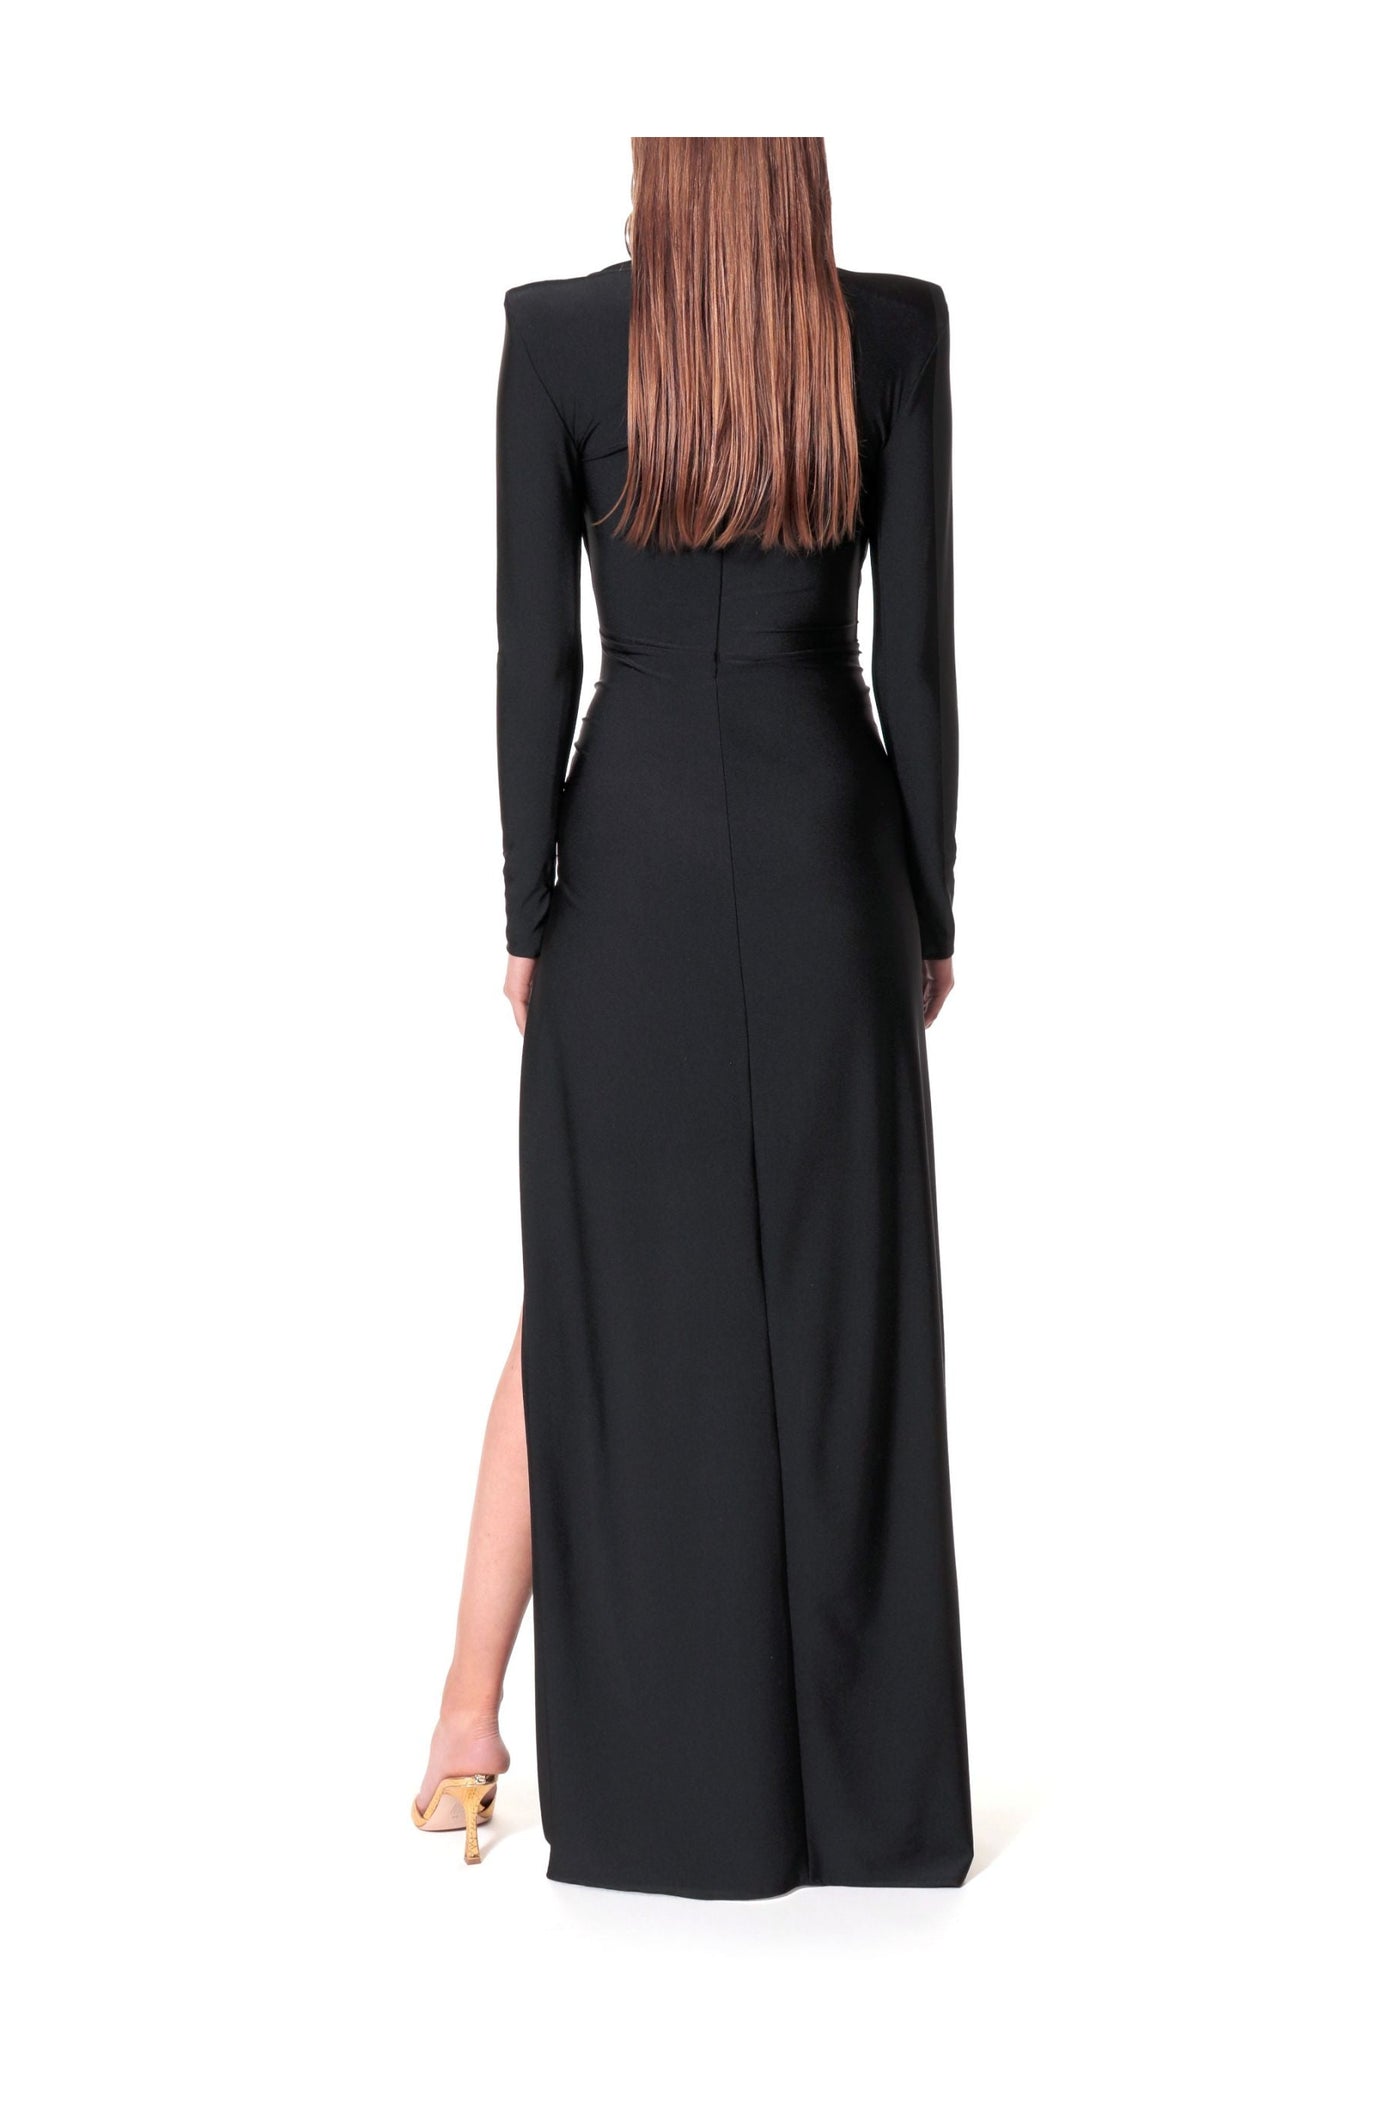 Adriana Power Black Dress